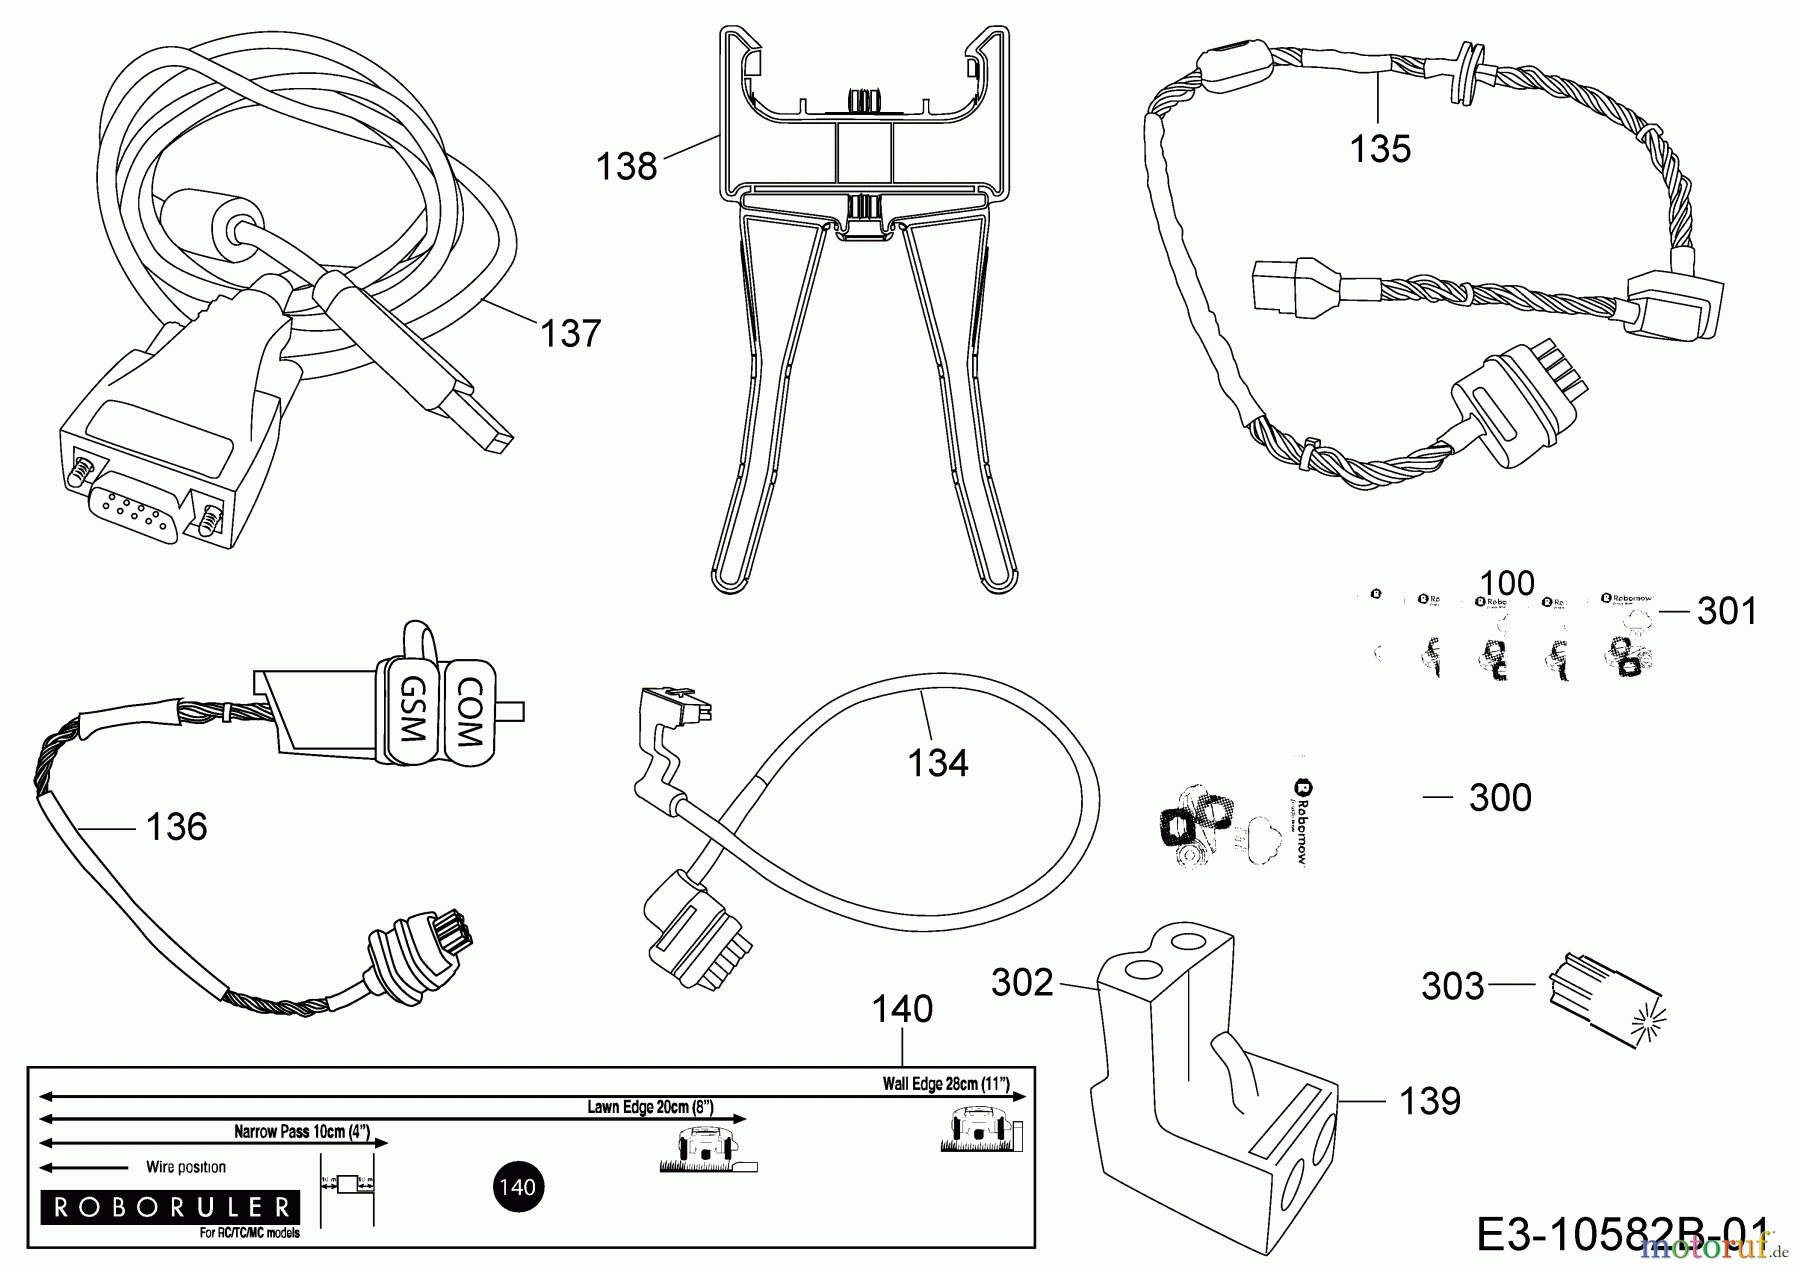  Robomow Mähroboter RC312U PRD7012YG  (2017) Kabel, Kabelanschluß, Regensensor, Werkzeug